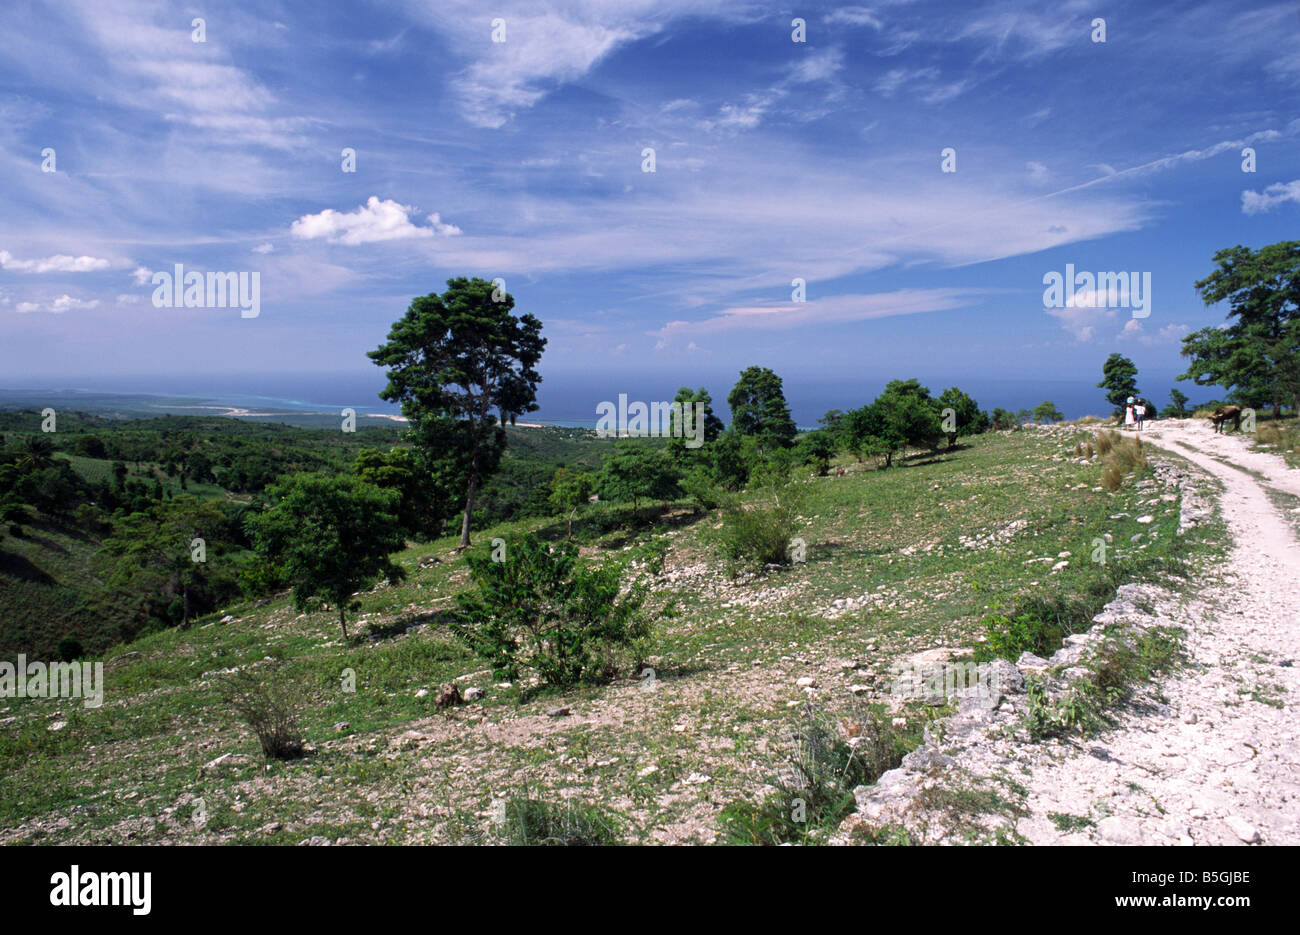 L'extrême de l'érosion du sol et la déforestation signifie que l'environnement d'Haïti est l'une des plus sinistrées dans le monde Banque D'Images